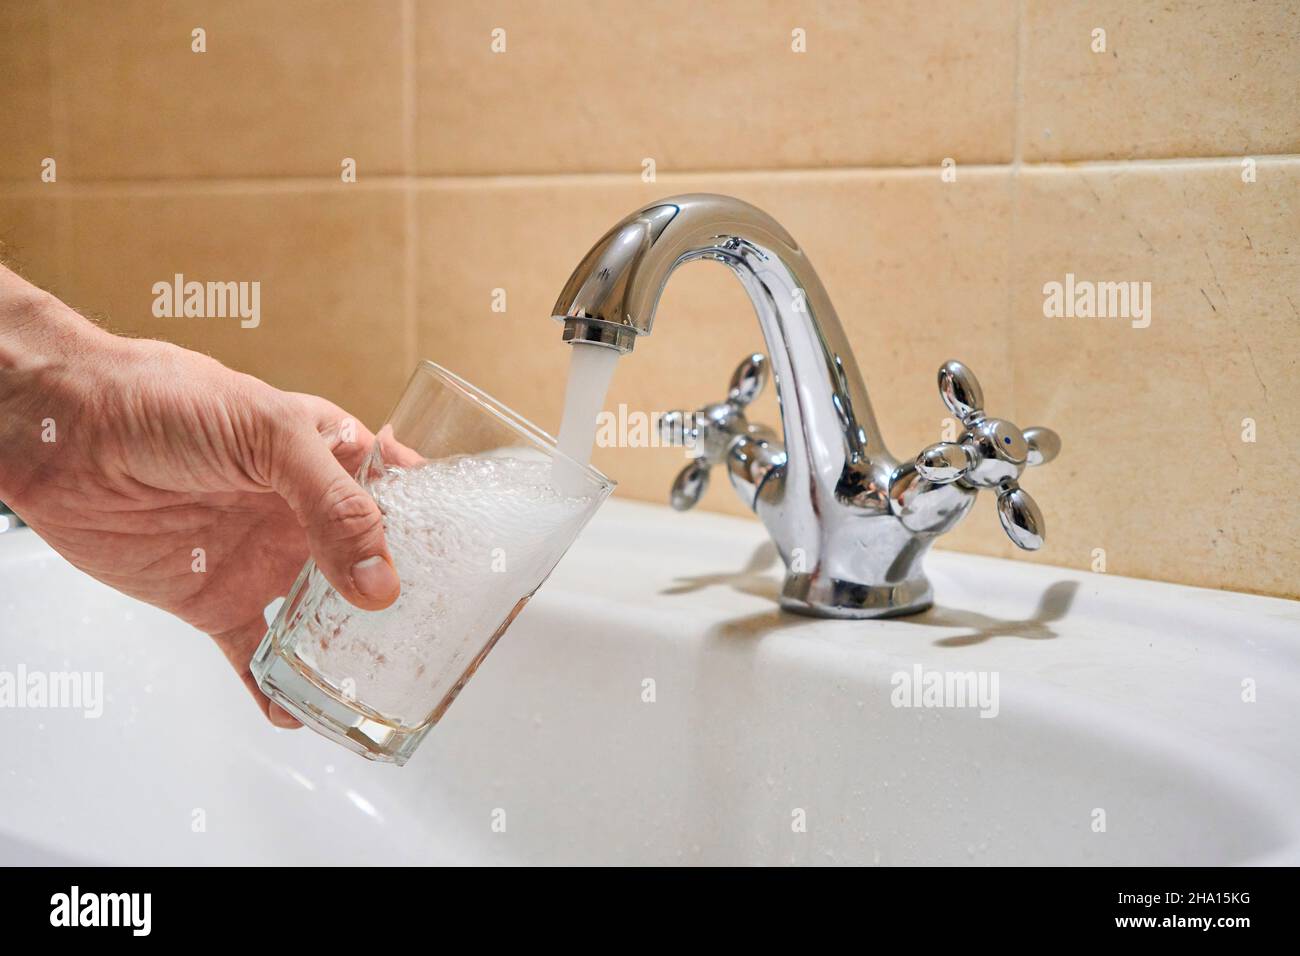 Homme remplissant un verre d'eau à partir d'un robinet à colonne en acier inoxydable.La main d'un homme verse de l'eau dans le verre du robinet chromé de la salle de bains pour boire de l'eau courante Banque D'Images